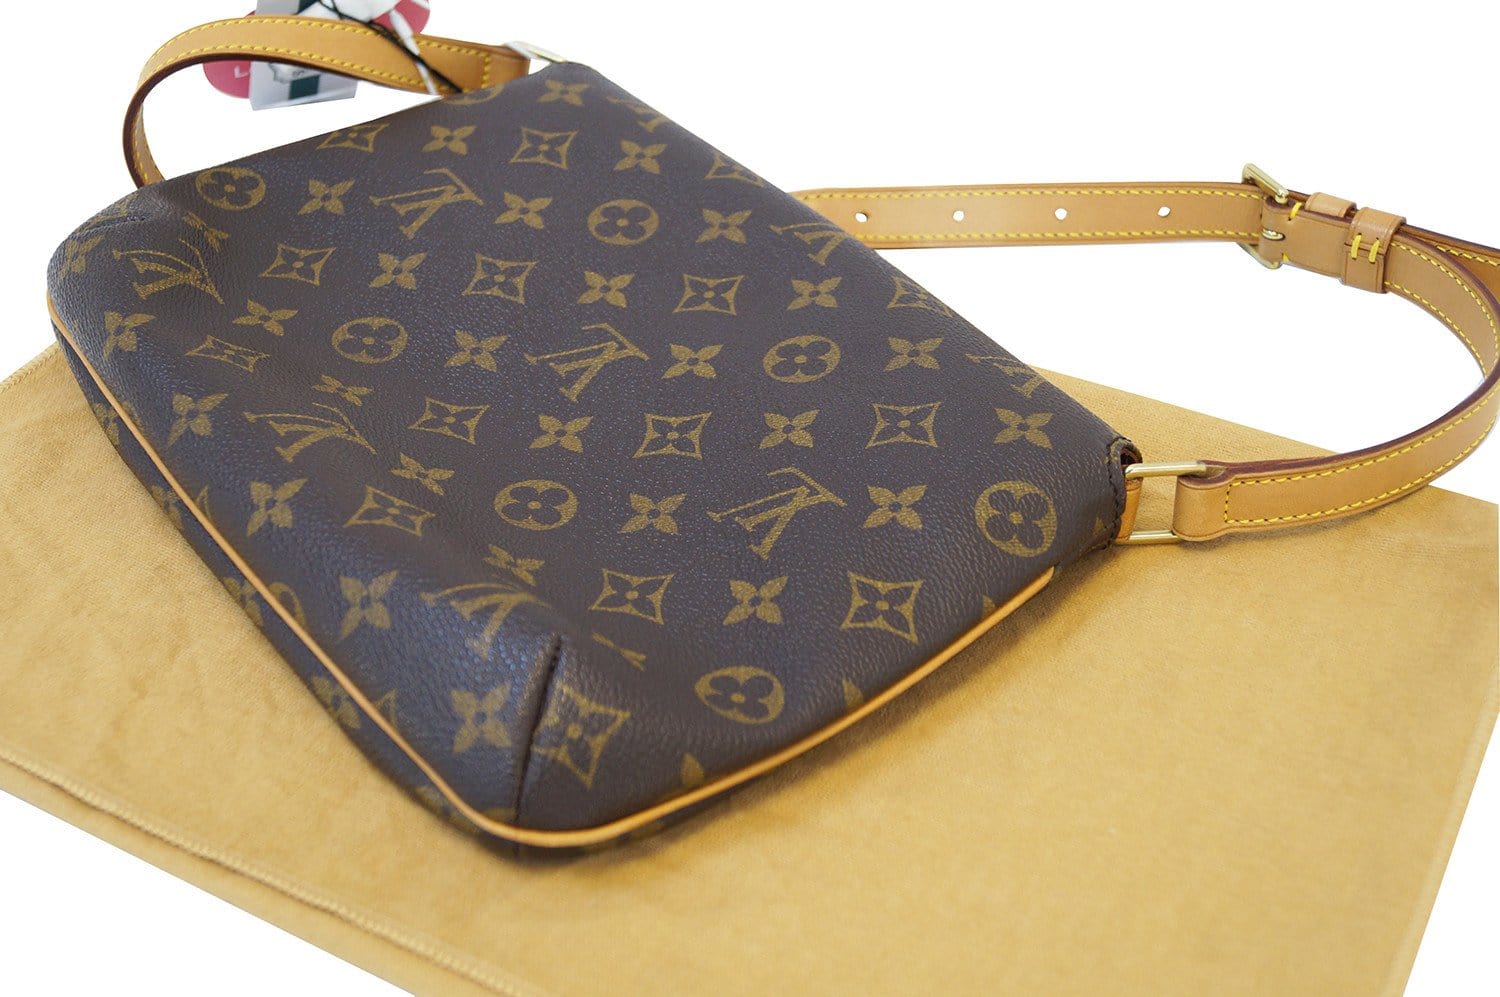 Louis Vuitton 2001 pre-owned Musette Tango shoulder bag - ShopStyle